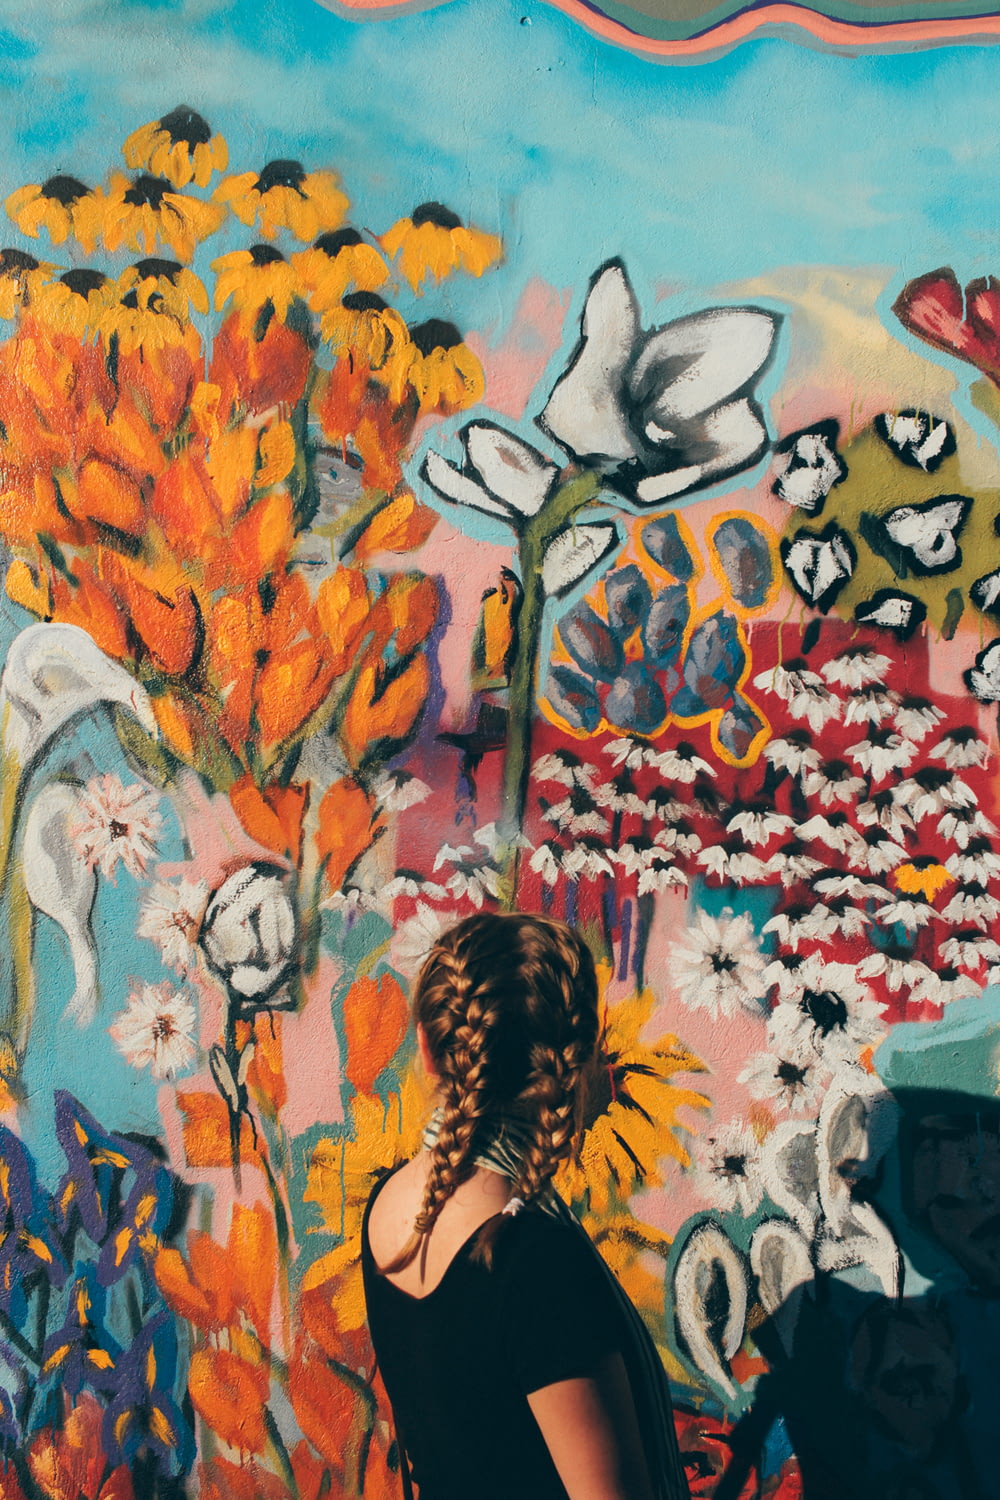 mujer mirando frente a la pared de graffiti floral